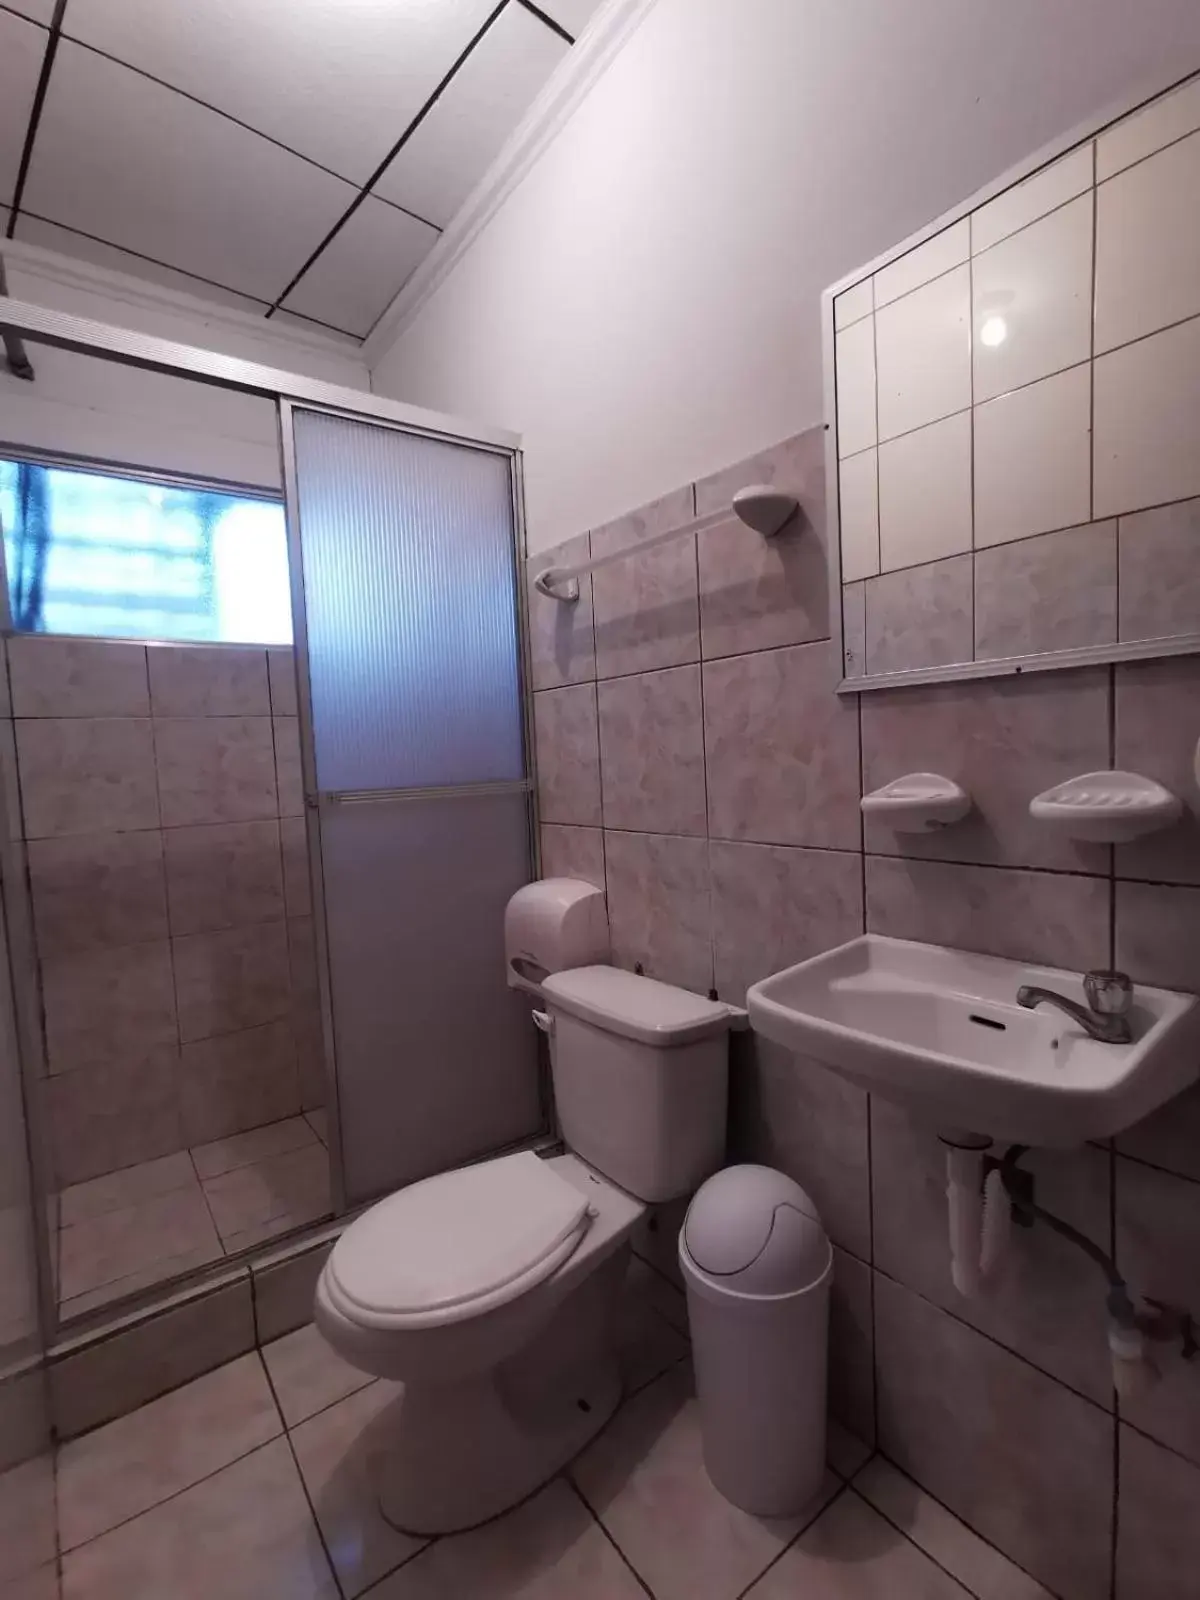 Bathroom in Hotel Aldea Chorotega Puntarenas